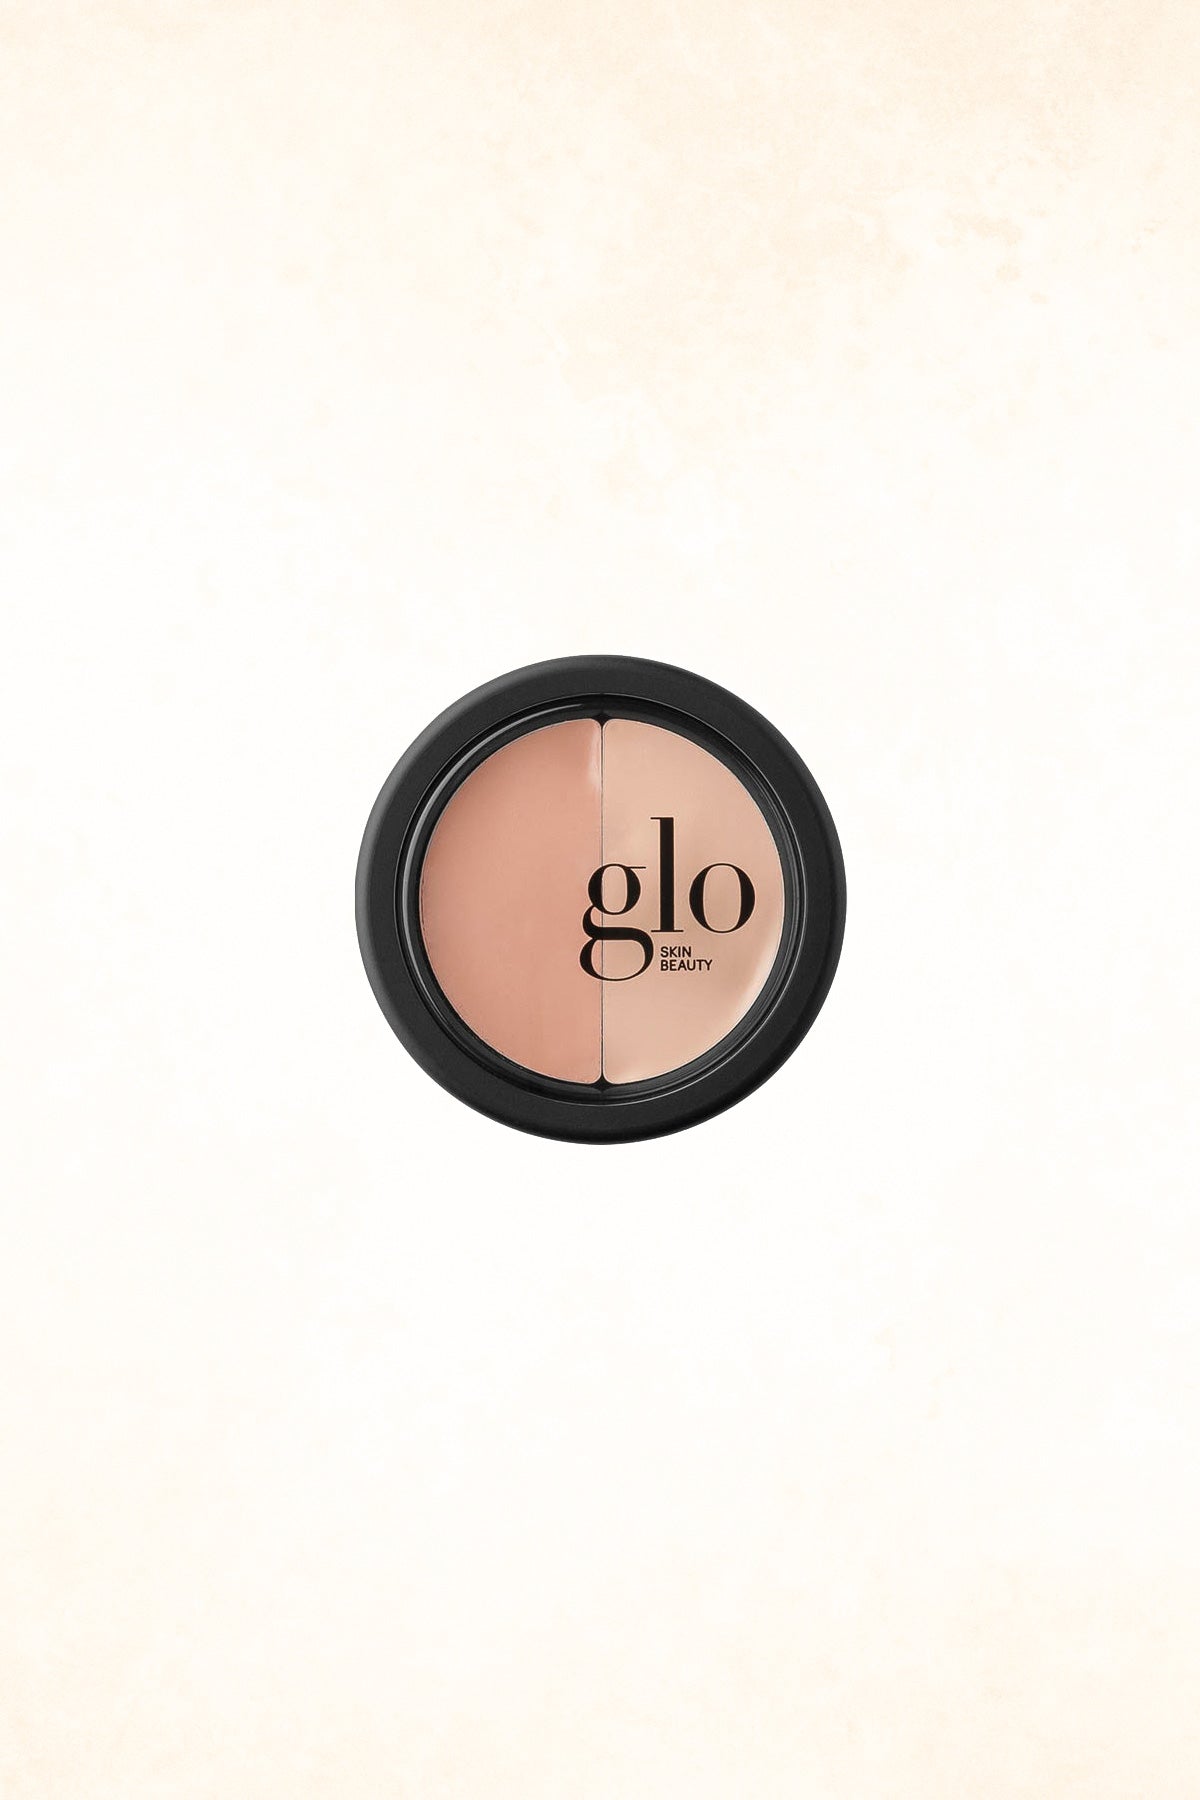 Glo Skin Beauty - Under Eye Concealer - Beige